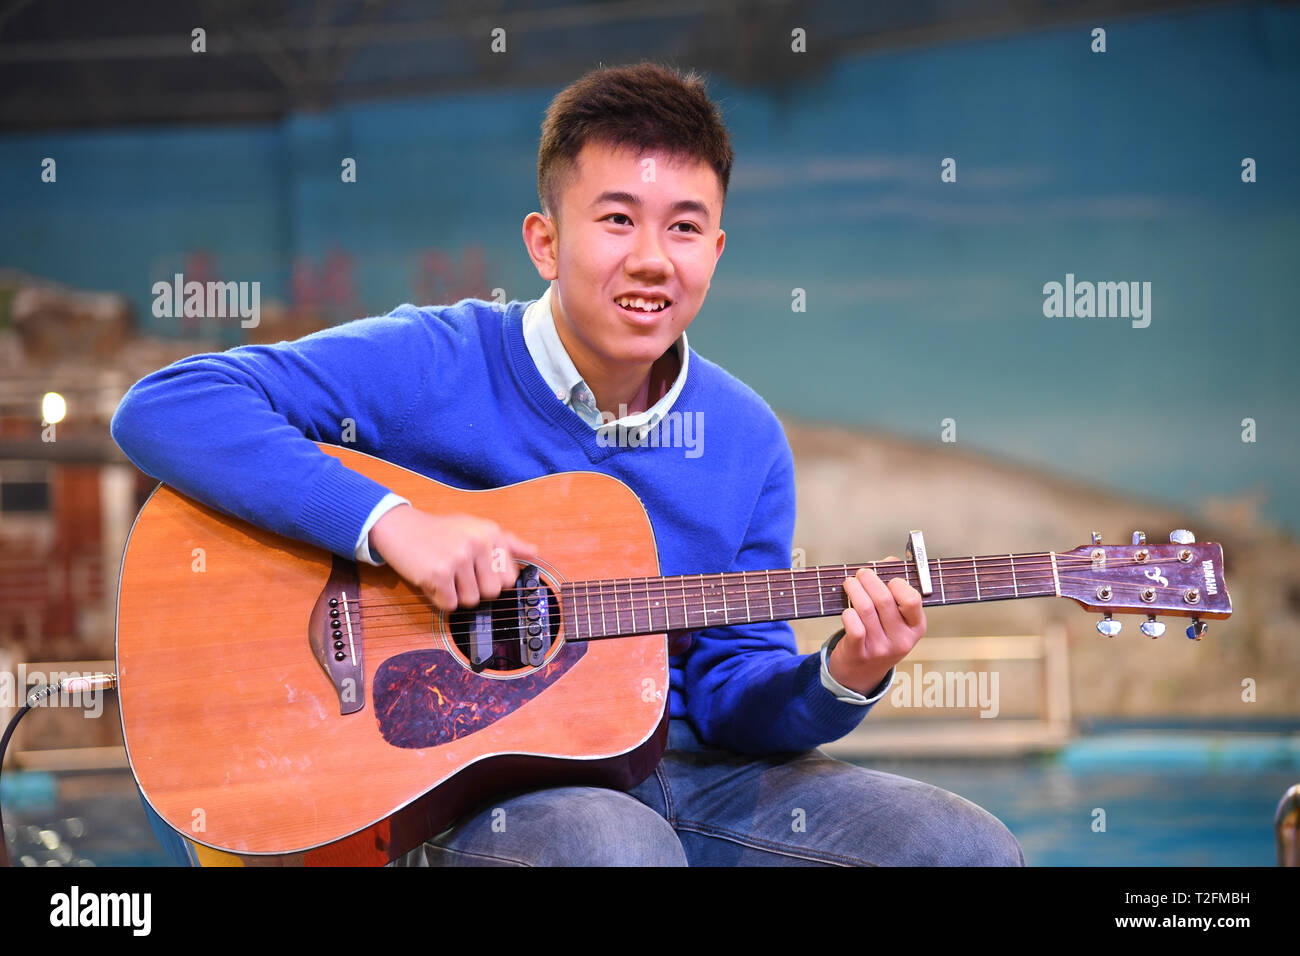 (190402) -- QINGDAO, 2 avril 2019 (Xinhua) -- Zheng Senyou joue de la guitare pour les personnes à Qingdao, province de Shandong en Chine orientale, le 1 avril 2019. Zheng Senyou, un adolescent de 16 ans, a reçu un diagnostic d'autisme à l'âge de 4 ans. Comme un enfant autiste, il souffre de troubles du langage et la socialisation. En tant que traitement médical commun peu aidé, Zheng et sa famille ont été à la recherche d'options et appris à connaître DFH (plongée sous-marine pour l'humanité), une organisation non rentables et le sous-traitement. Après une période de neuf mois de traitement, la dépréciation n'a été atténuée. Une journée d'avance du monde Auti Banque D'Images